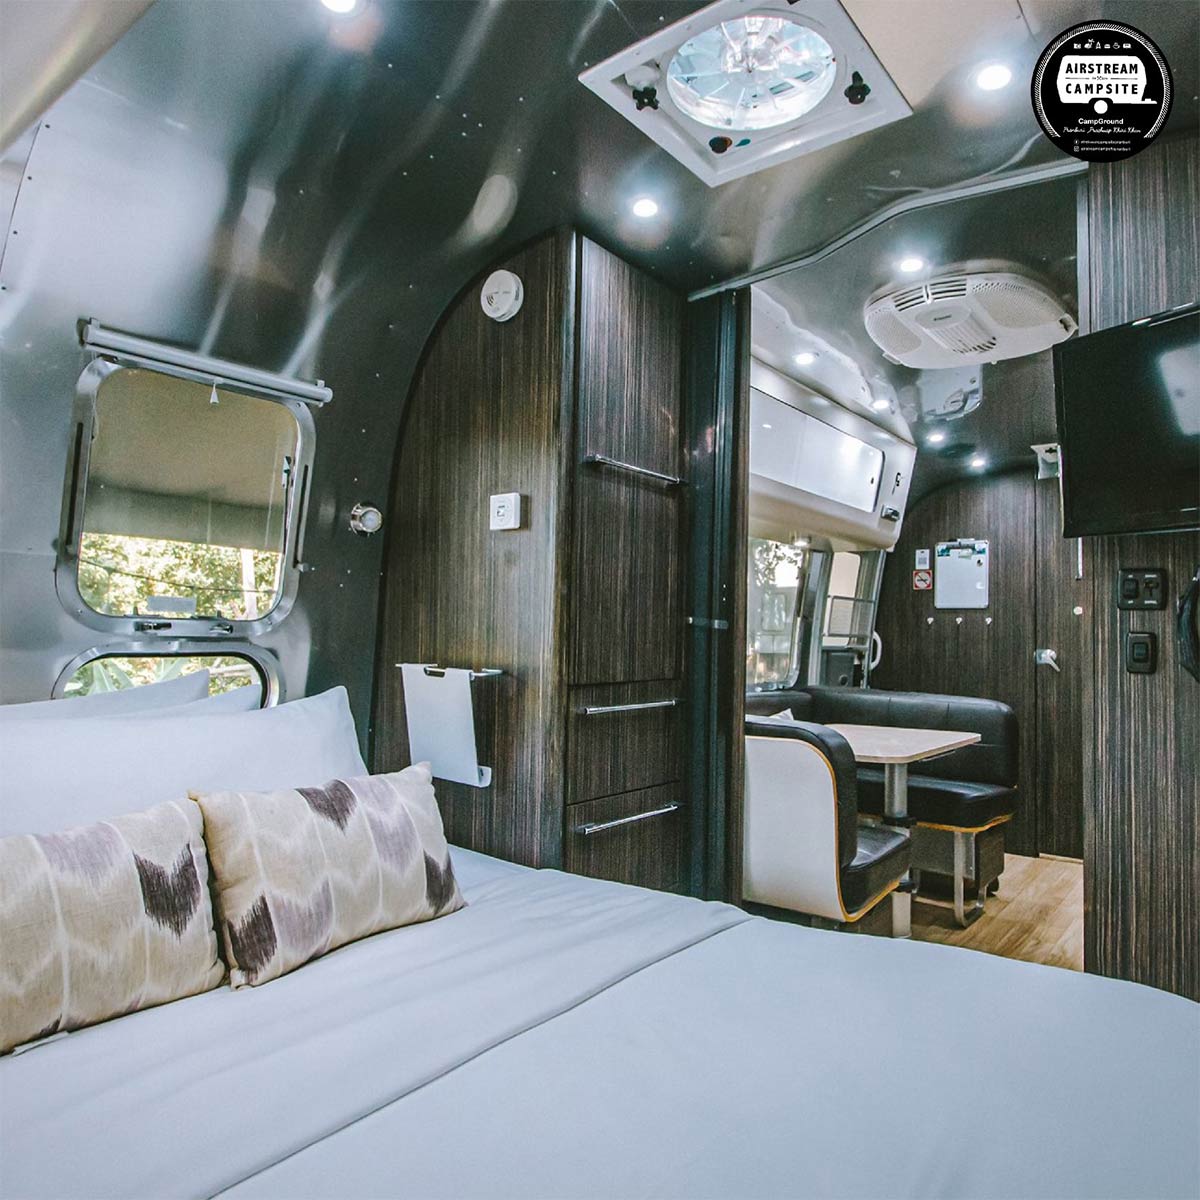 Airstream Campsite Pranburi - ที่พักรถบ้าน ปราณบุรี